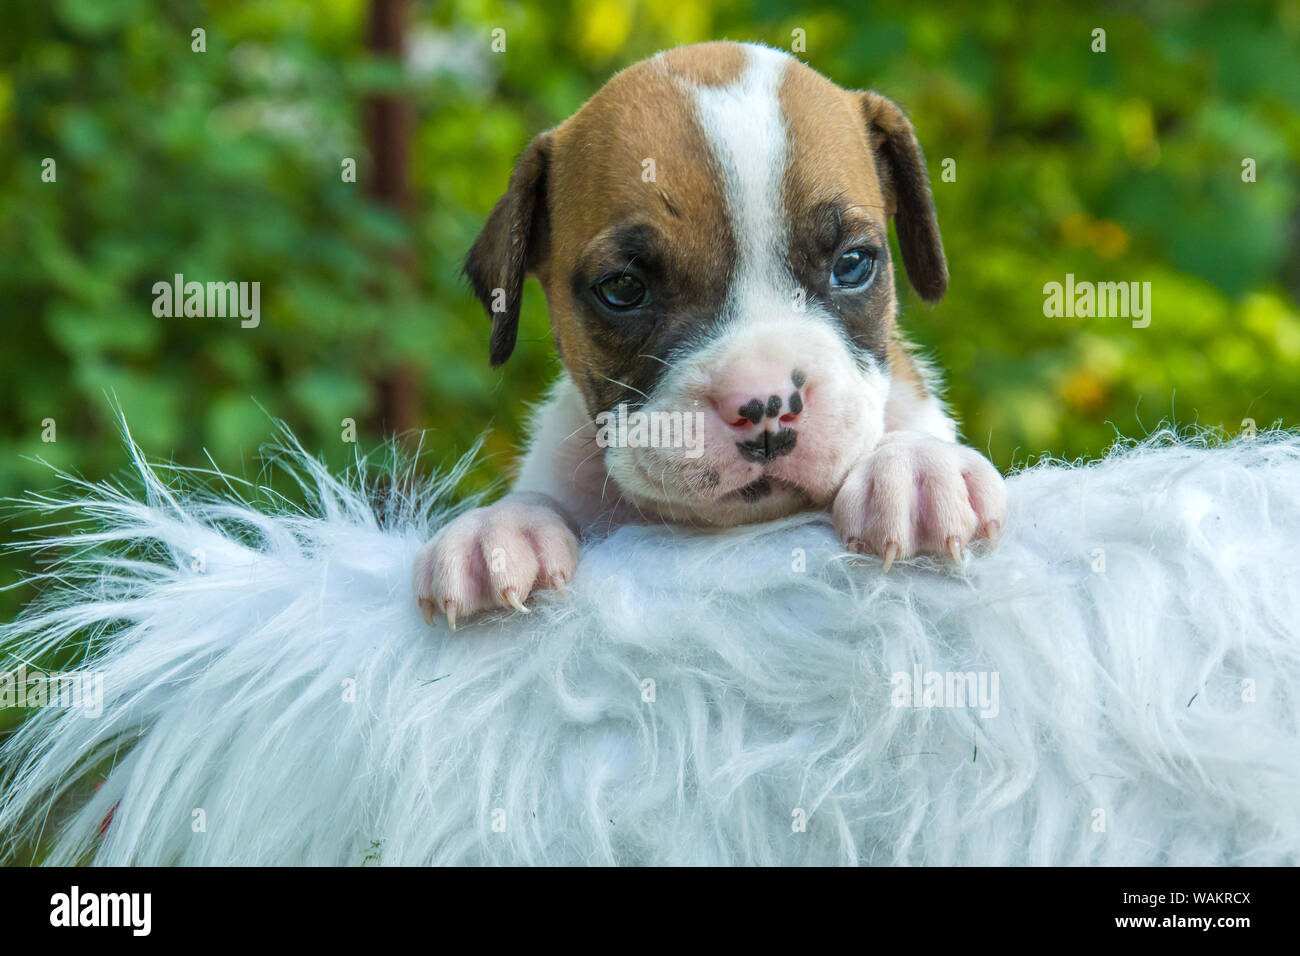 Porträt eines Welpen Hund auf einer weißen Decke Stockfoto